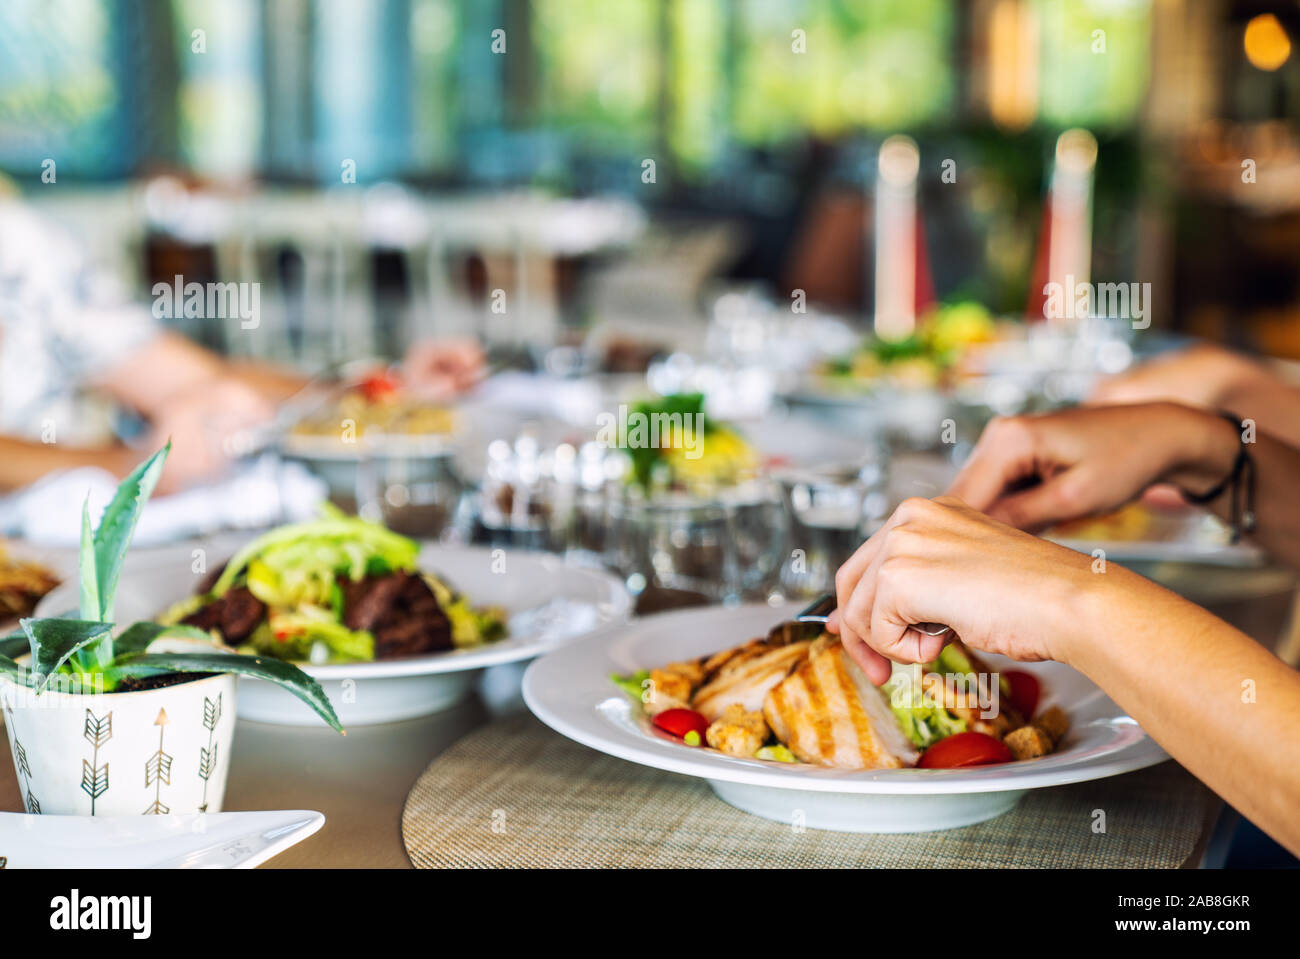 Un groupe de personnes est dans une salle à manger de l'élégance un restaurant ou un hôtel. Banque D'Images